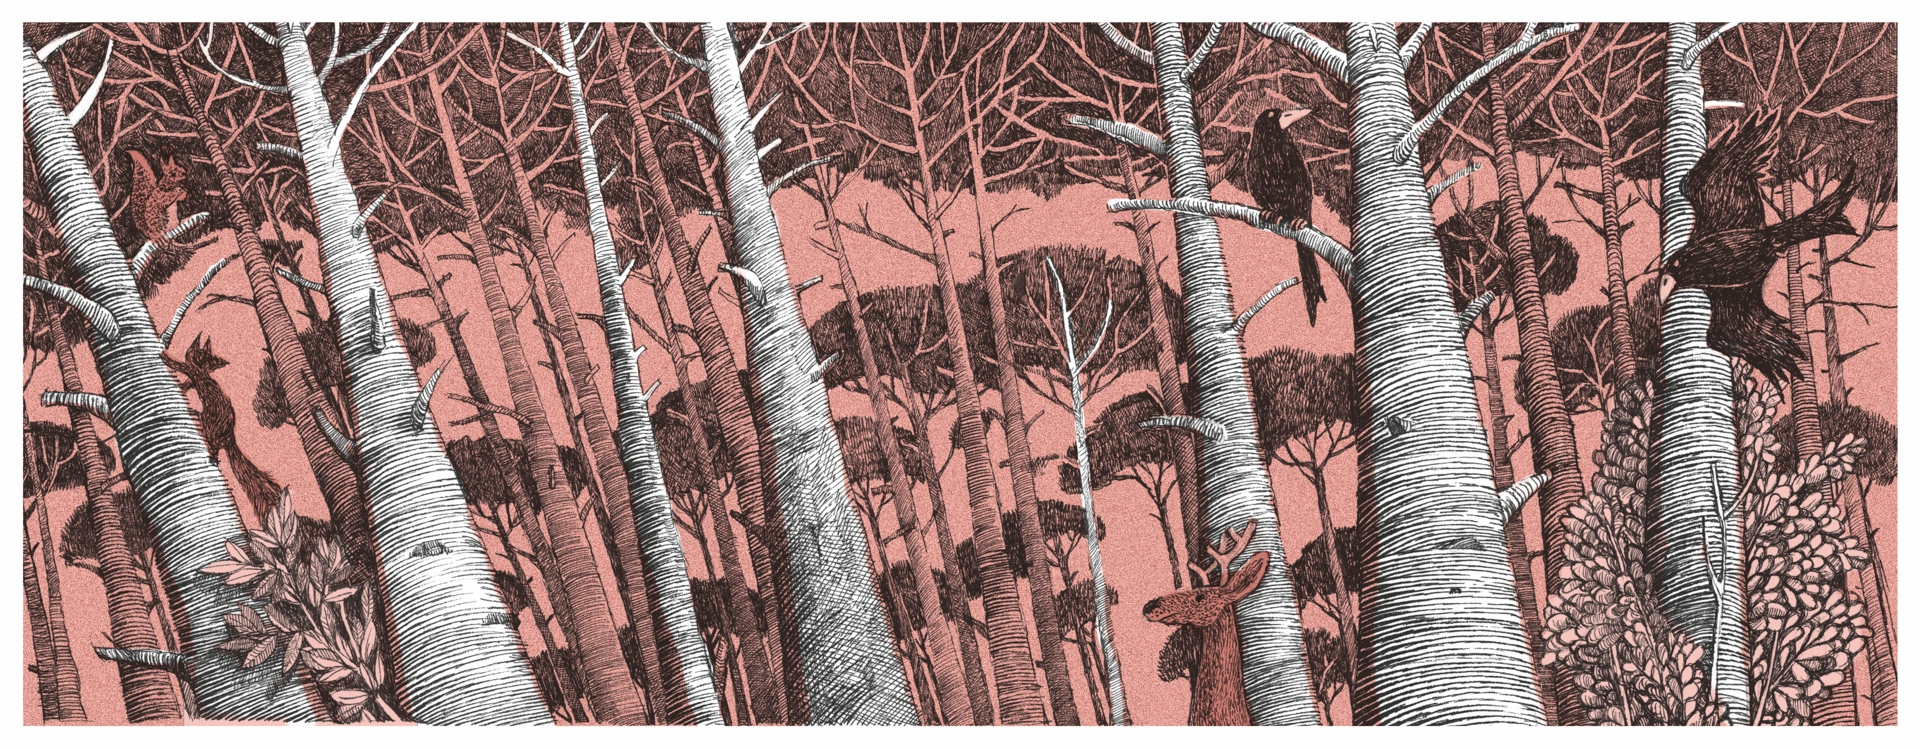 Rysunek piórkiem techniką cyfrową; las, ptak na gałęzi, wiewiórka na konarze, jeleń.